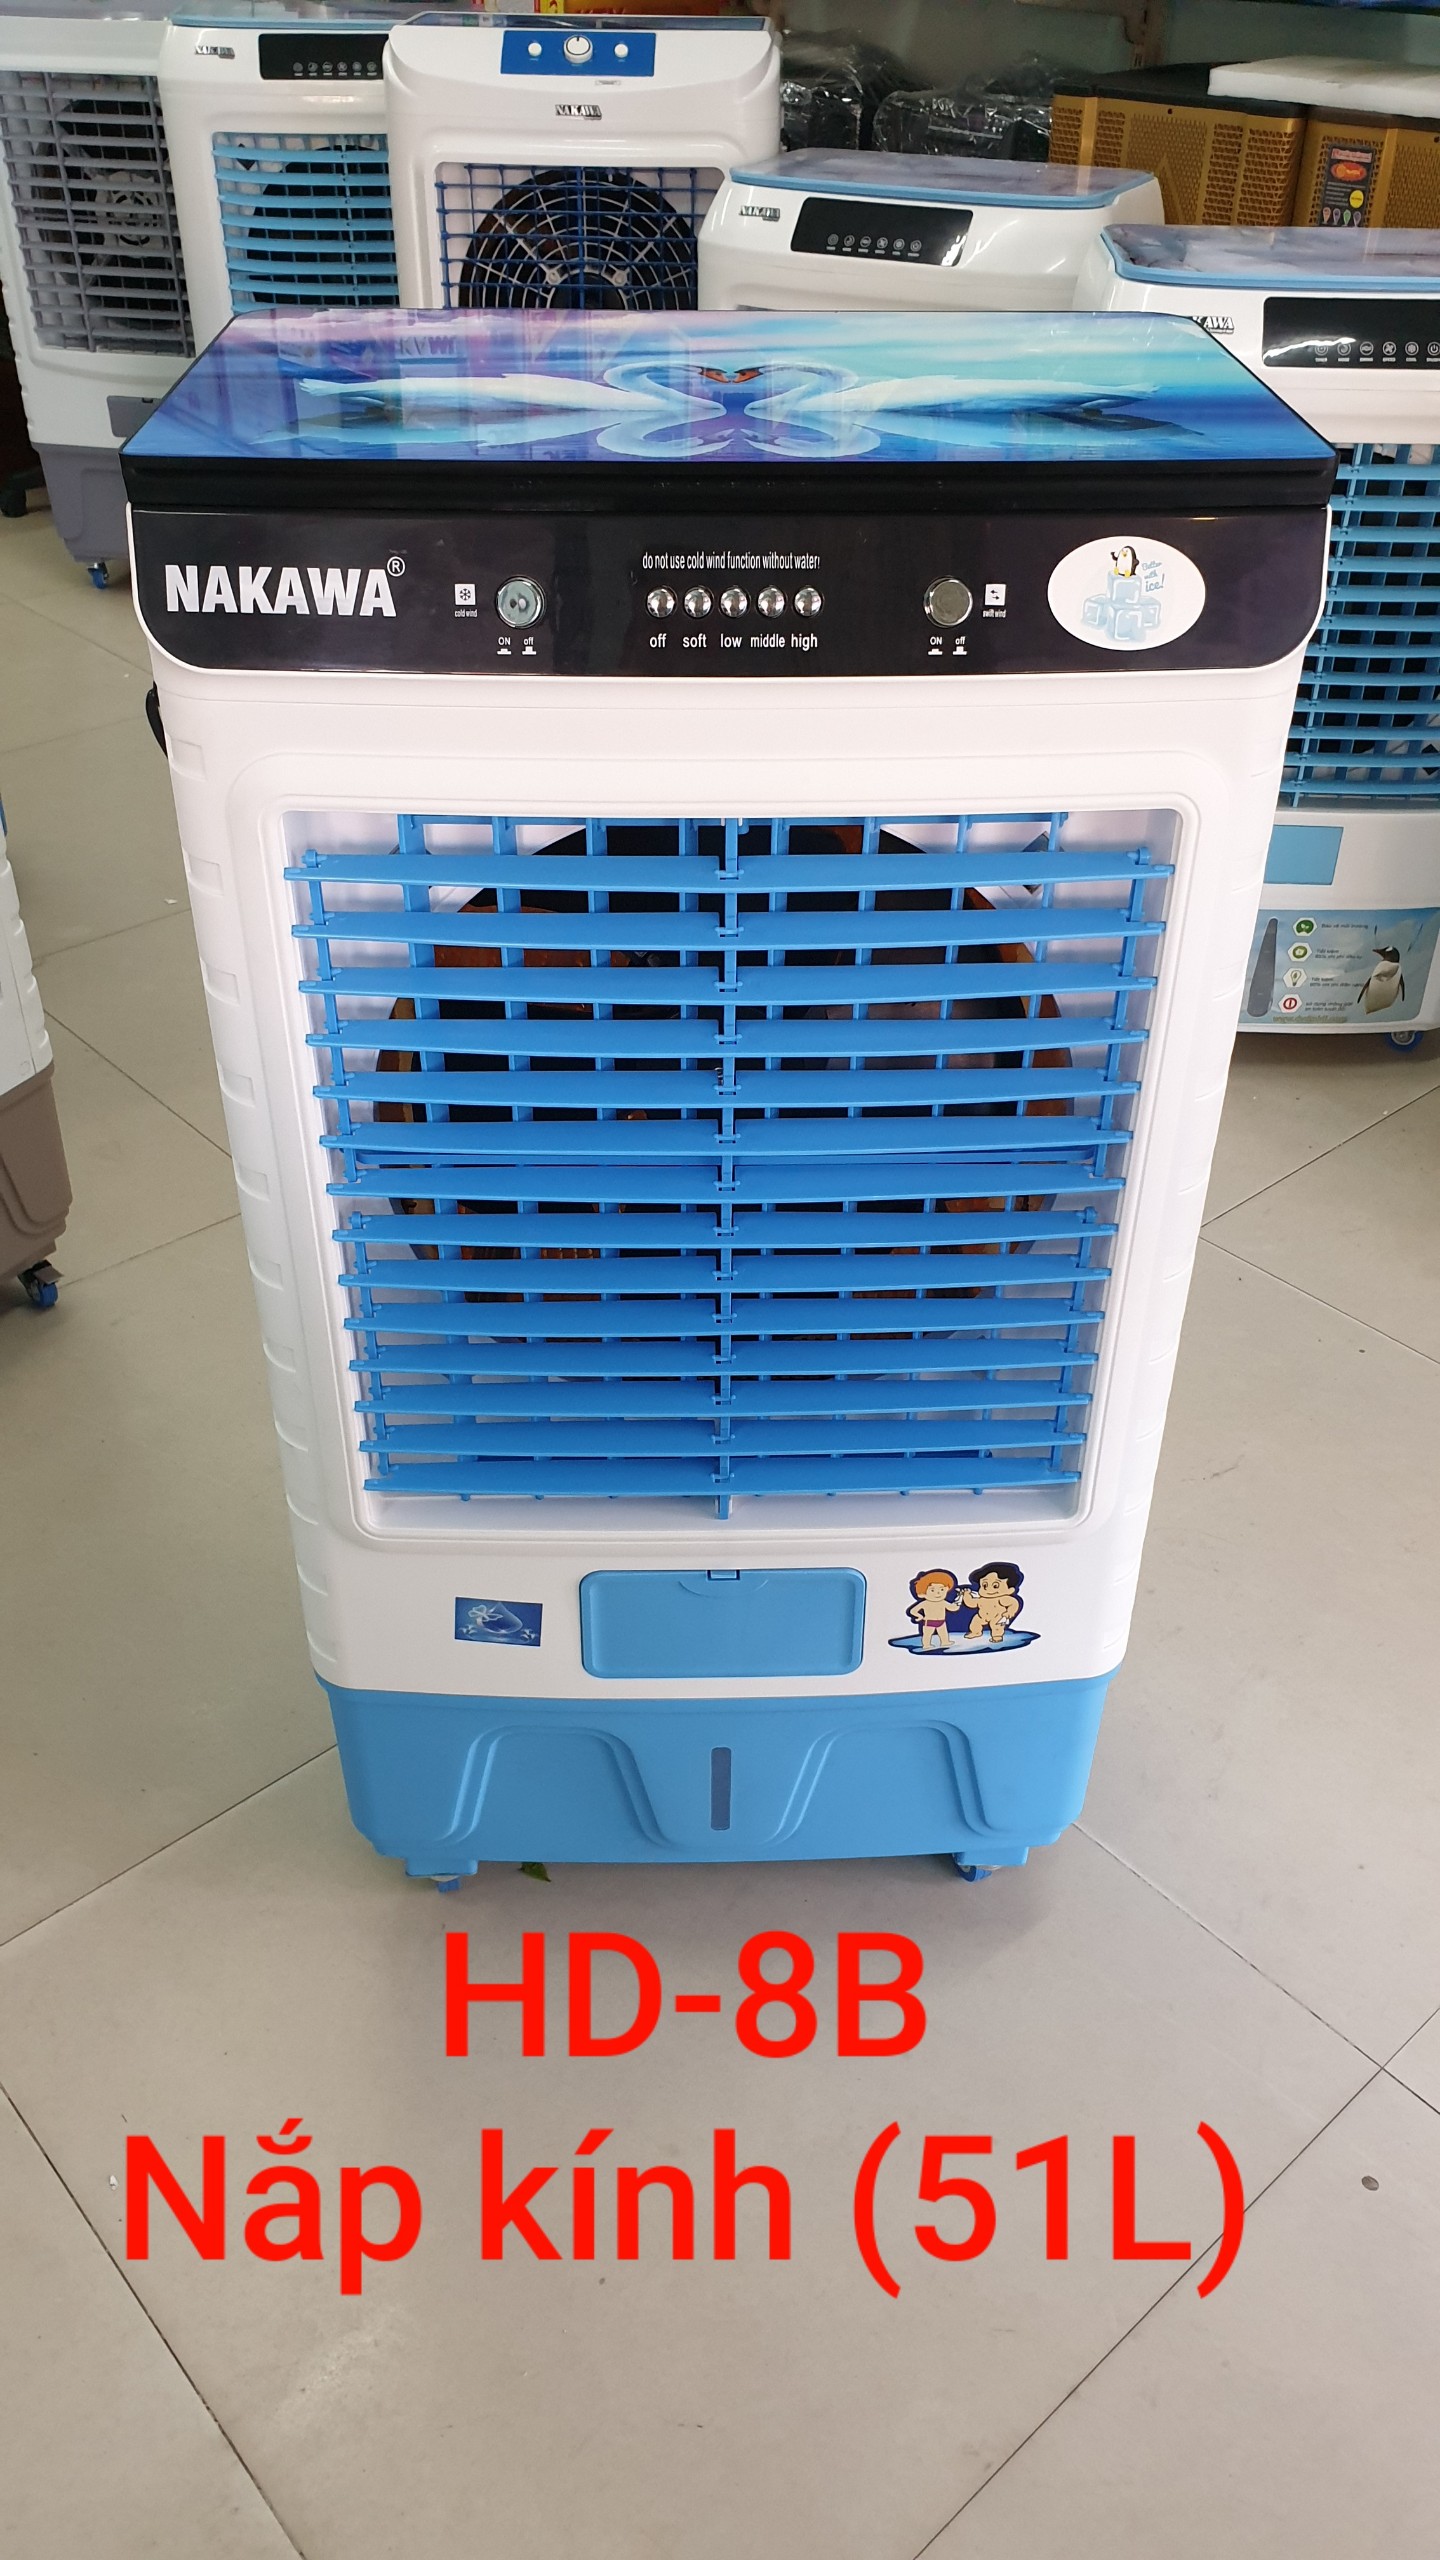 NAKAWA HD-8B